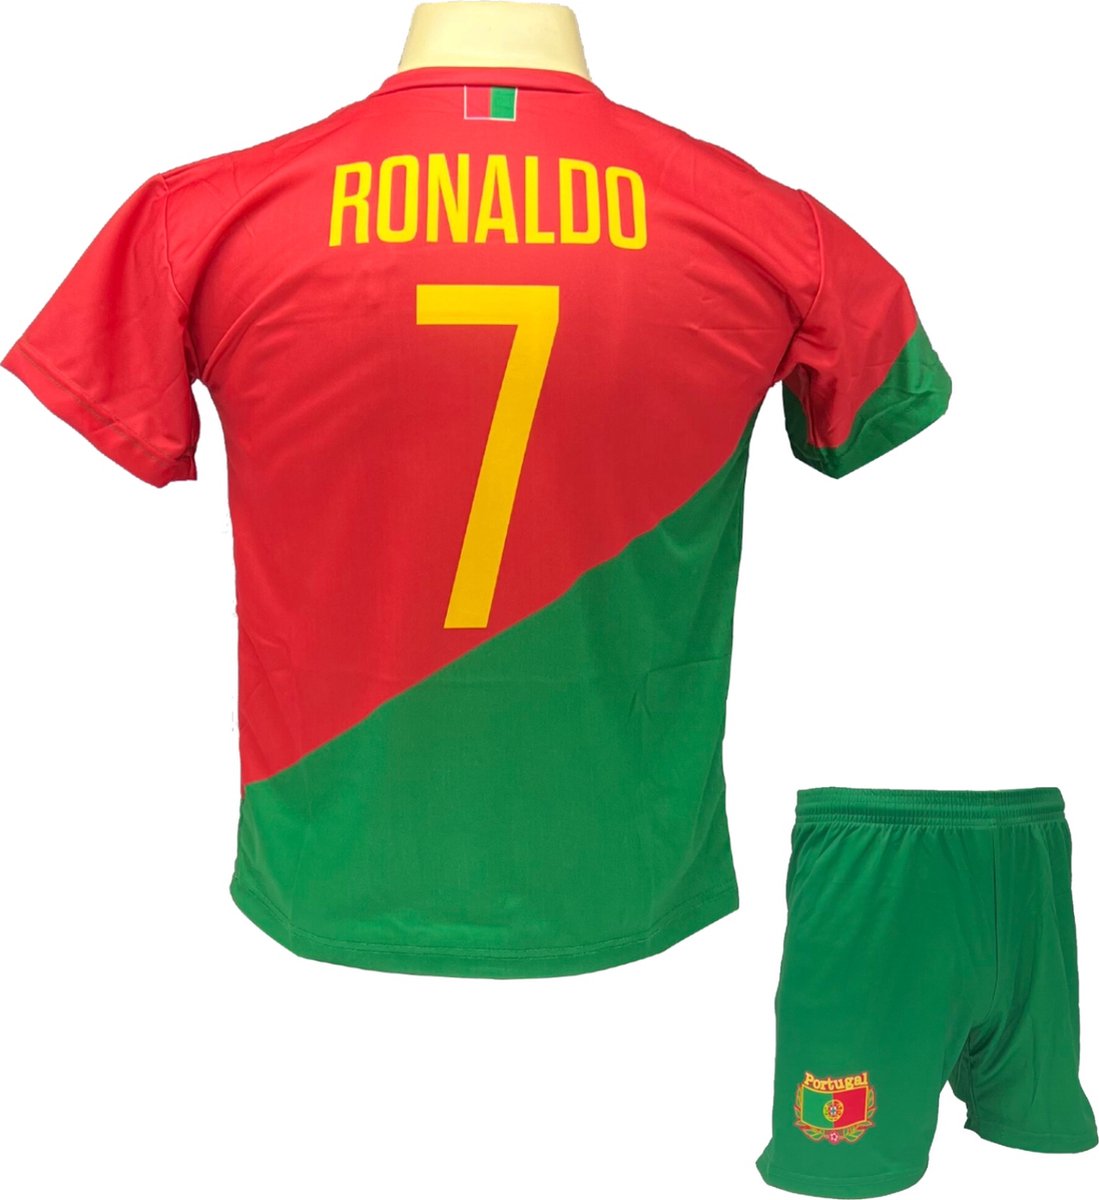 Cristiano Ronaldo CR7 Portugal Tenue - Voetbal Shirt + broekje set - EK/WK voetbaltenue - Maat M